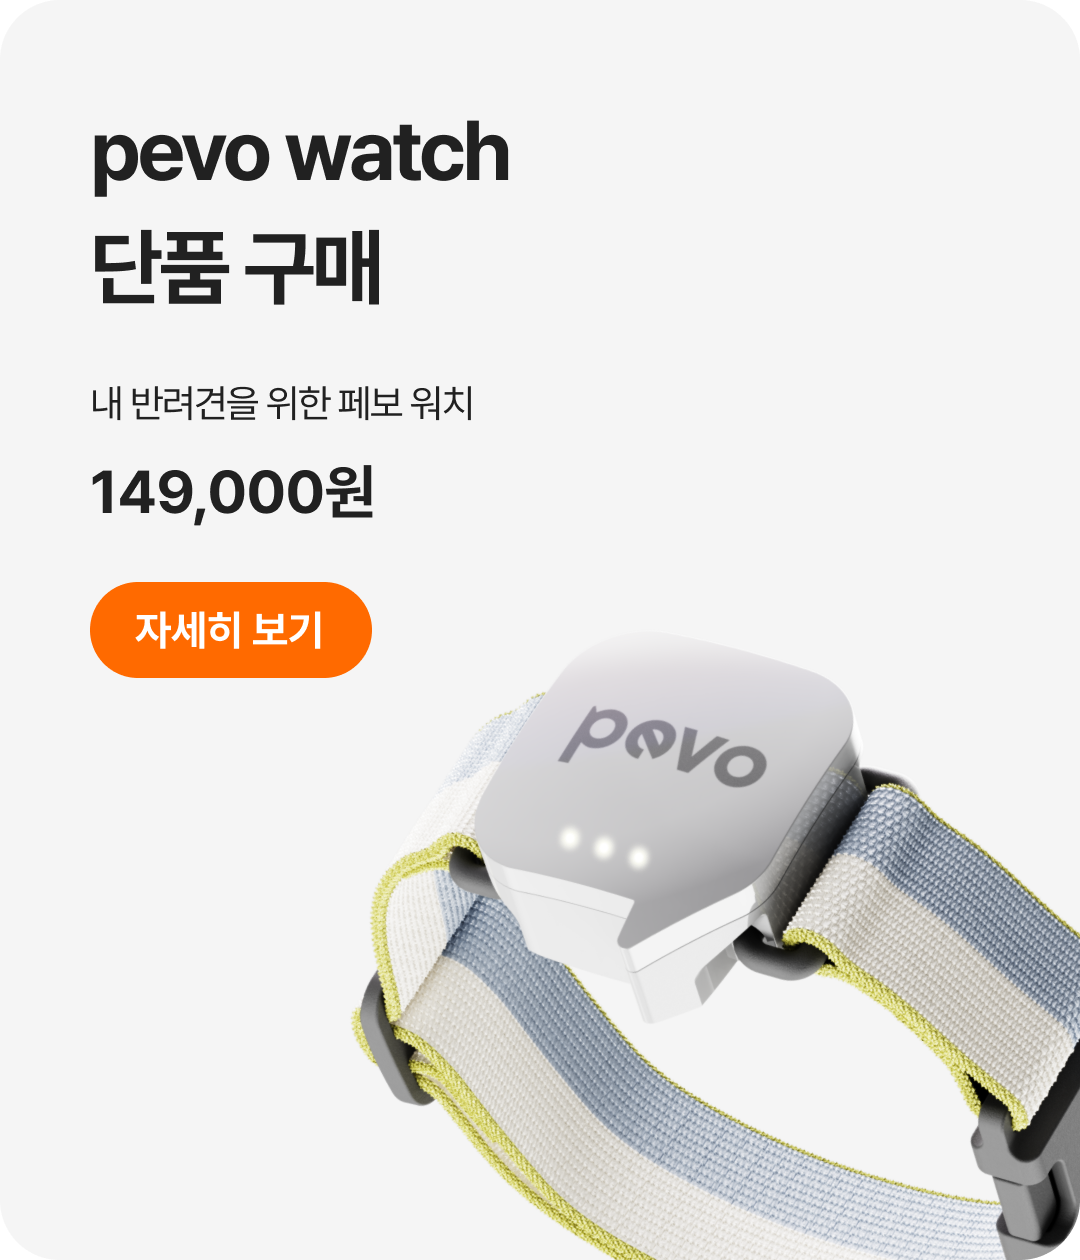 pevo watch 아이의 24시간 활동을 모니터링하는 가장 작고 가벼운, 웨어러블 디바이스